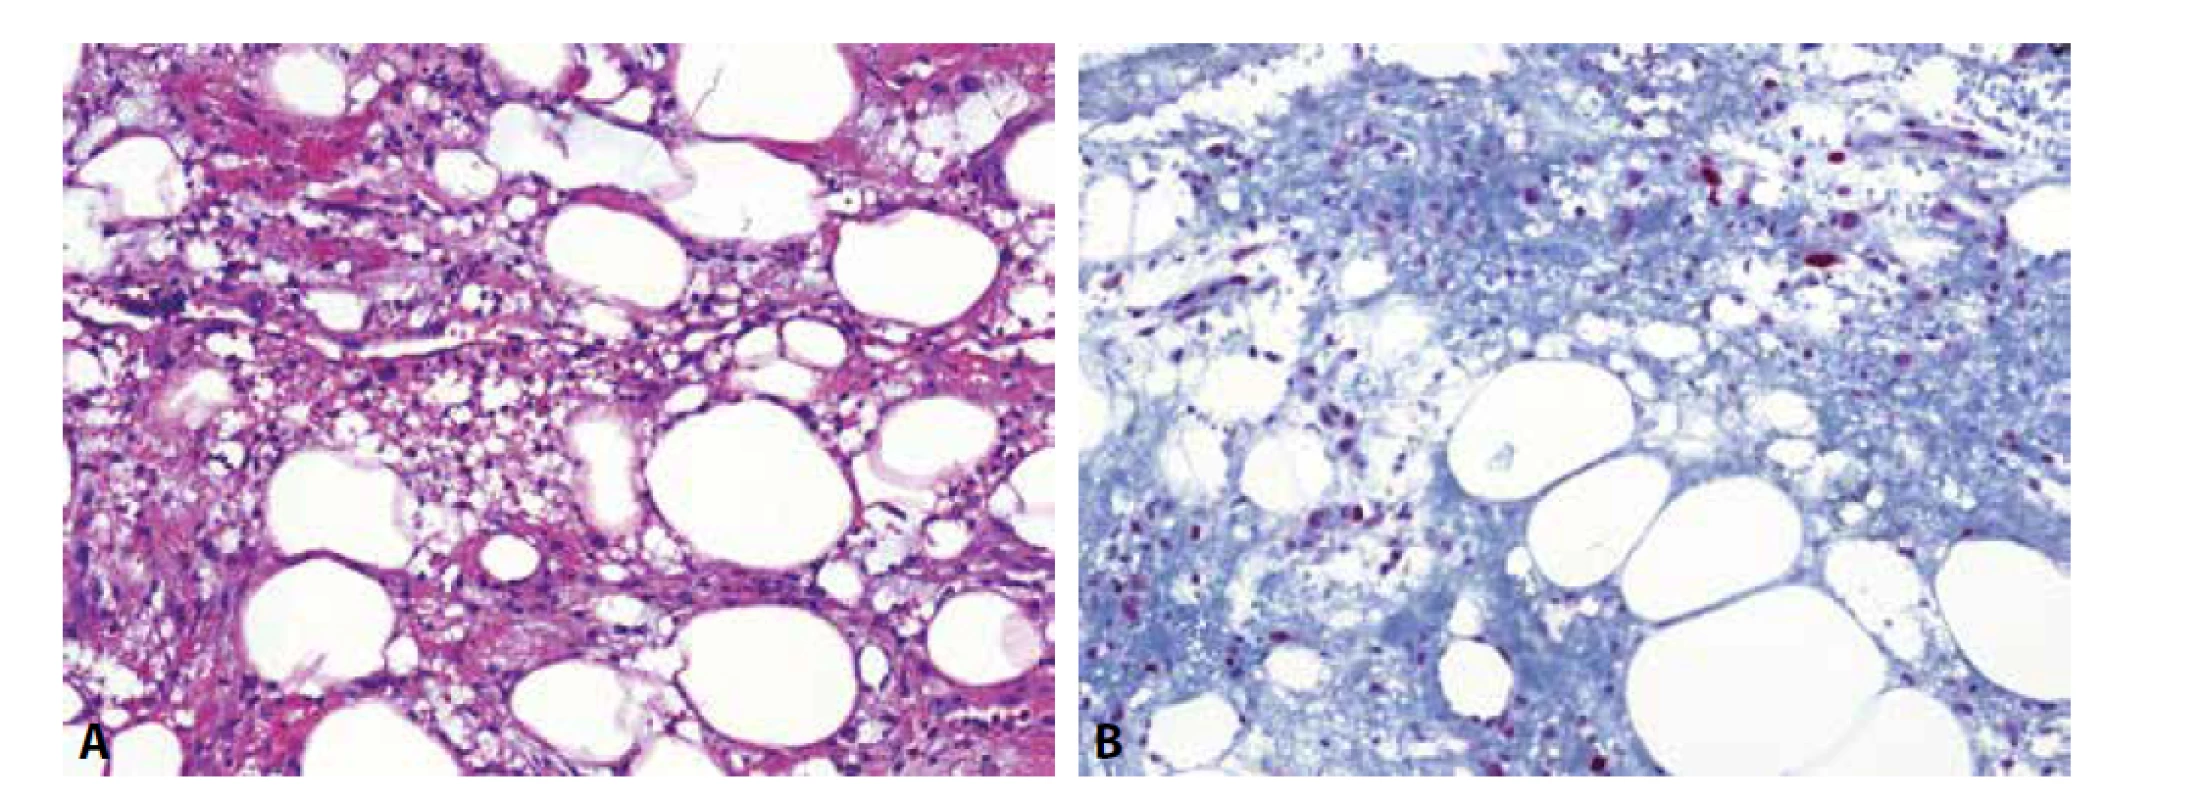 Traumatizovaná tuková tkáň (A) je jednou z lézí, která poměrně věrně napodobuje atypický lipomatózní tumor/dobře diferencovaný liposarkom.
Situaci dále komplikuje exprese MDM2 proteinu v nenádorových endoteliích a obzvláště v makrofázích, kterých je zde značné množství (B).